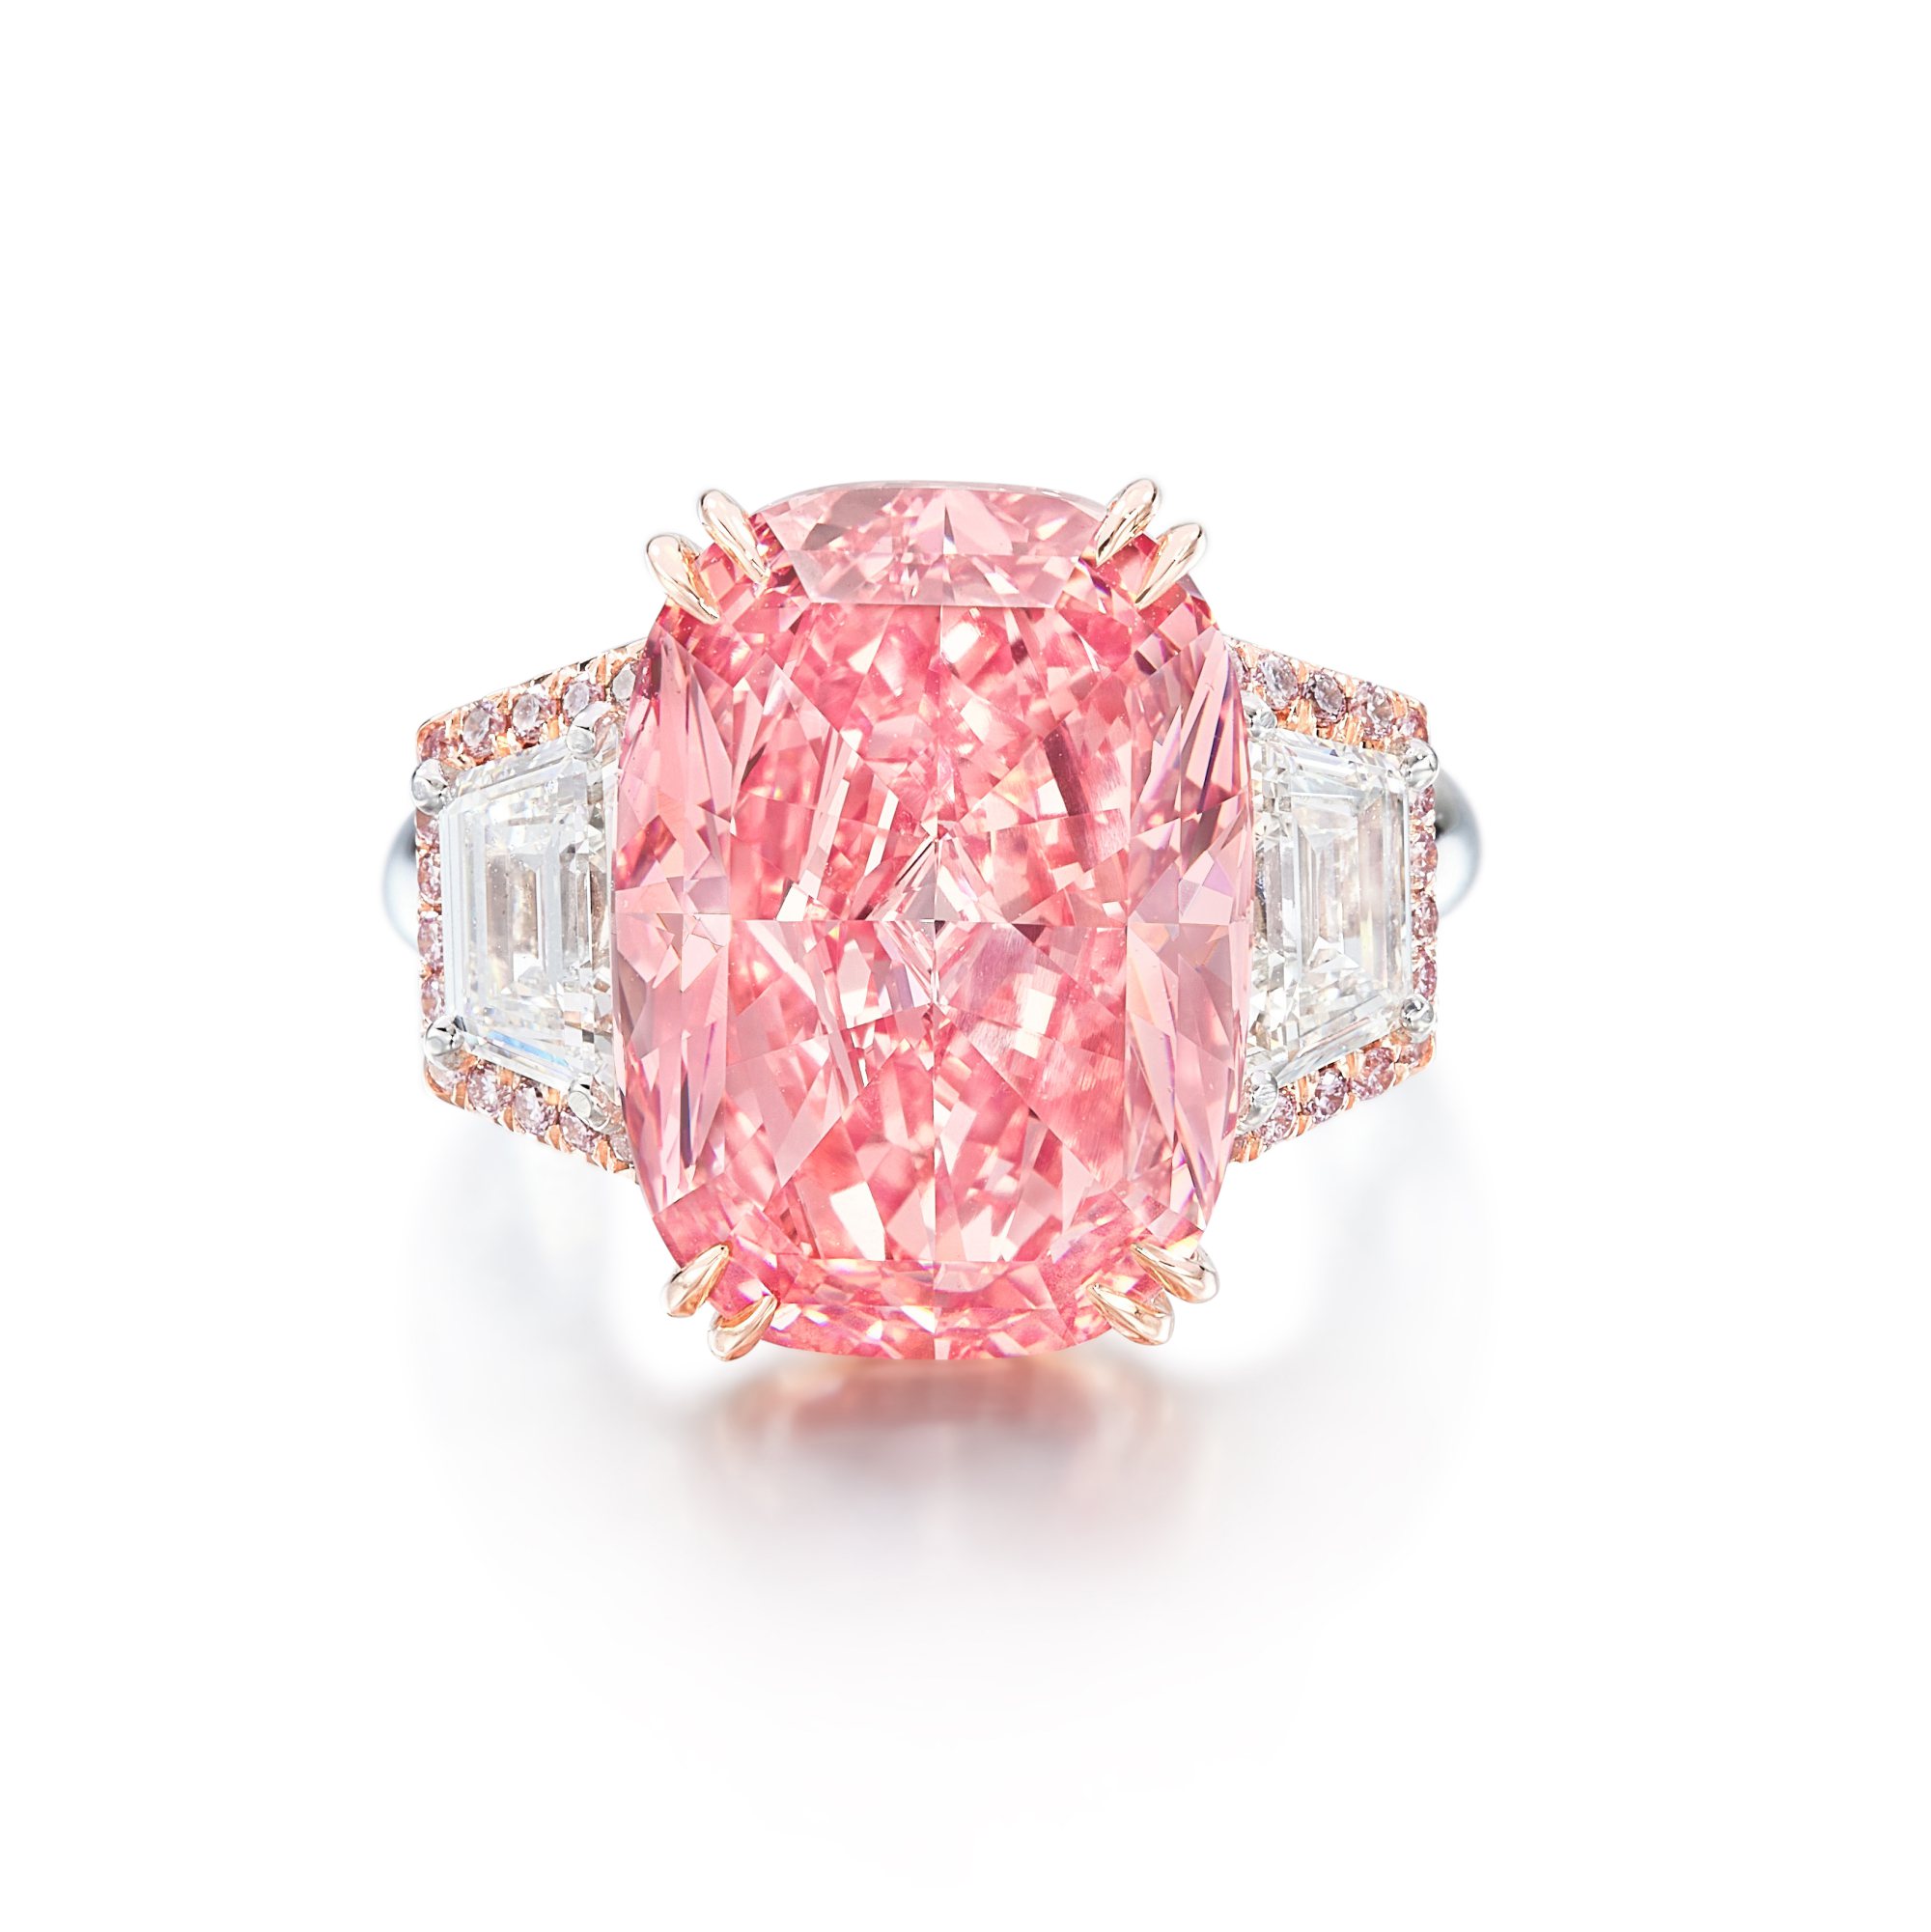 Quasi 60 milioni $ per il Williamson Pink Star da Sotheby’s. Nuovo record per carato per un diamante rosa Fancy Vivid